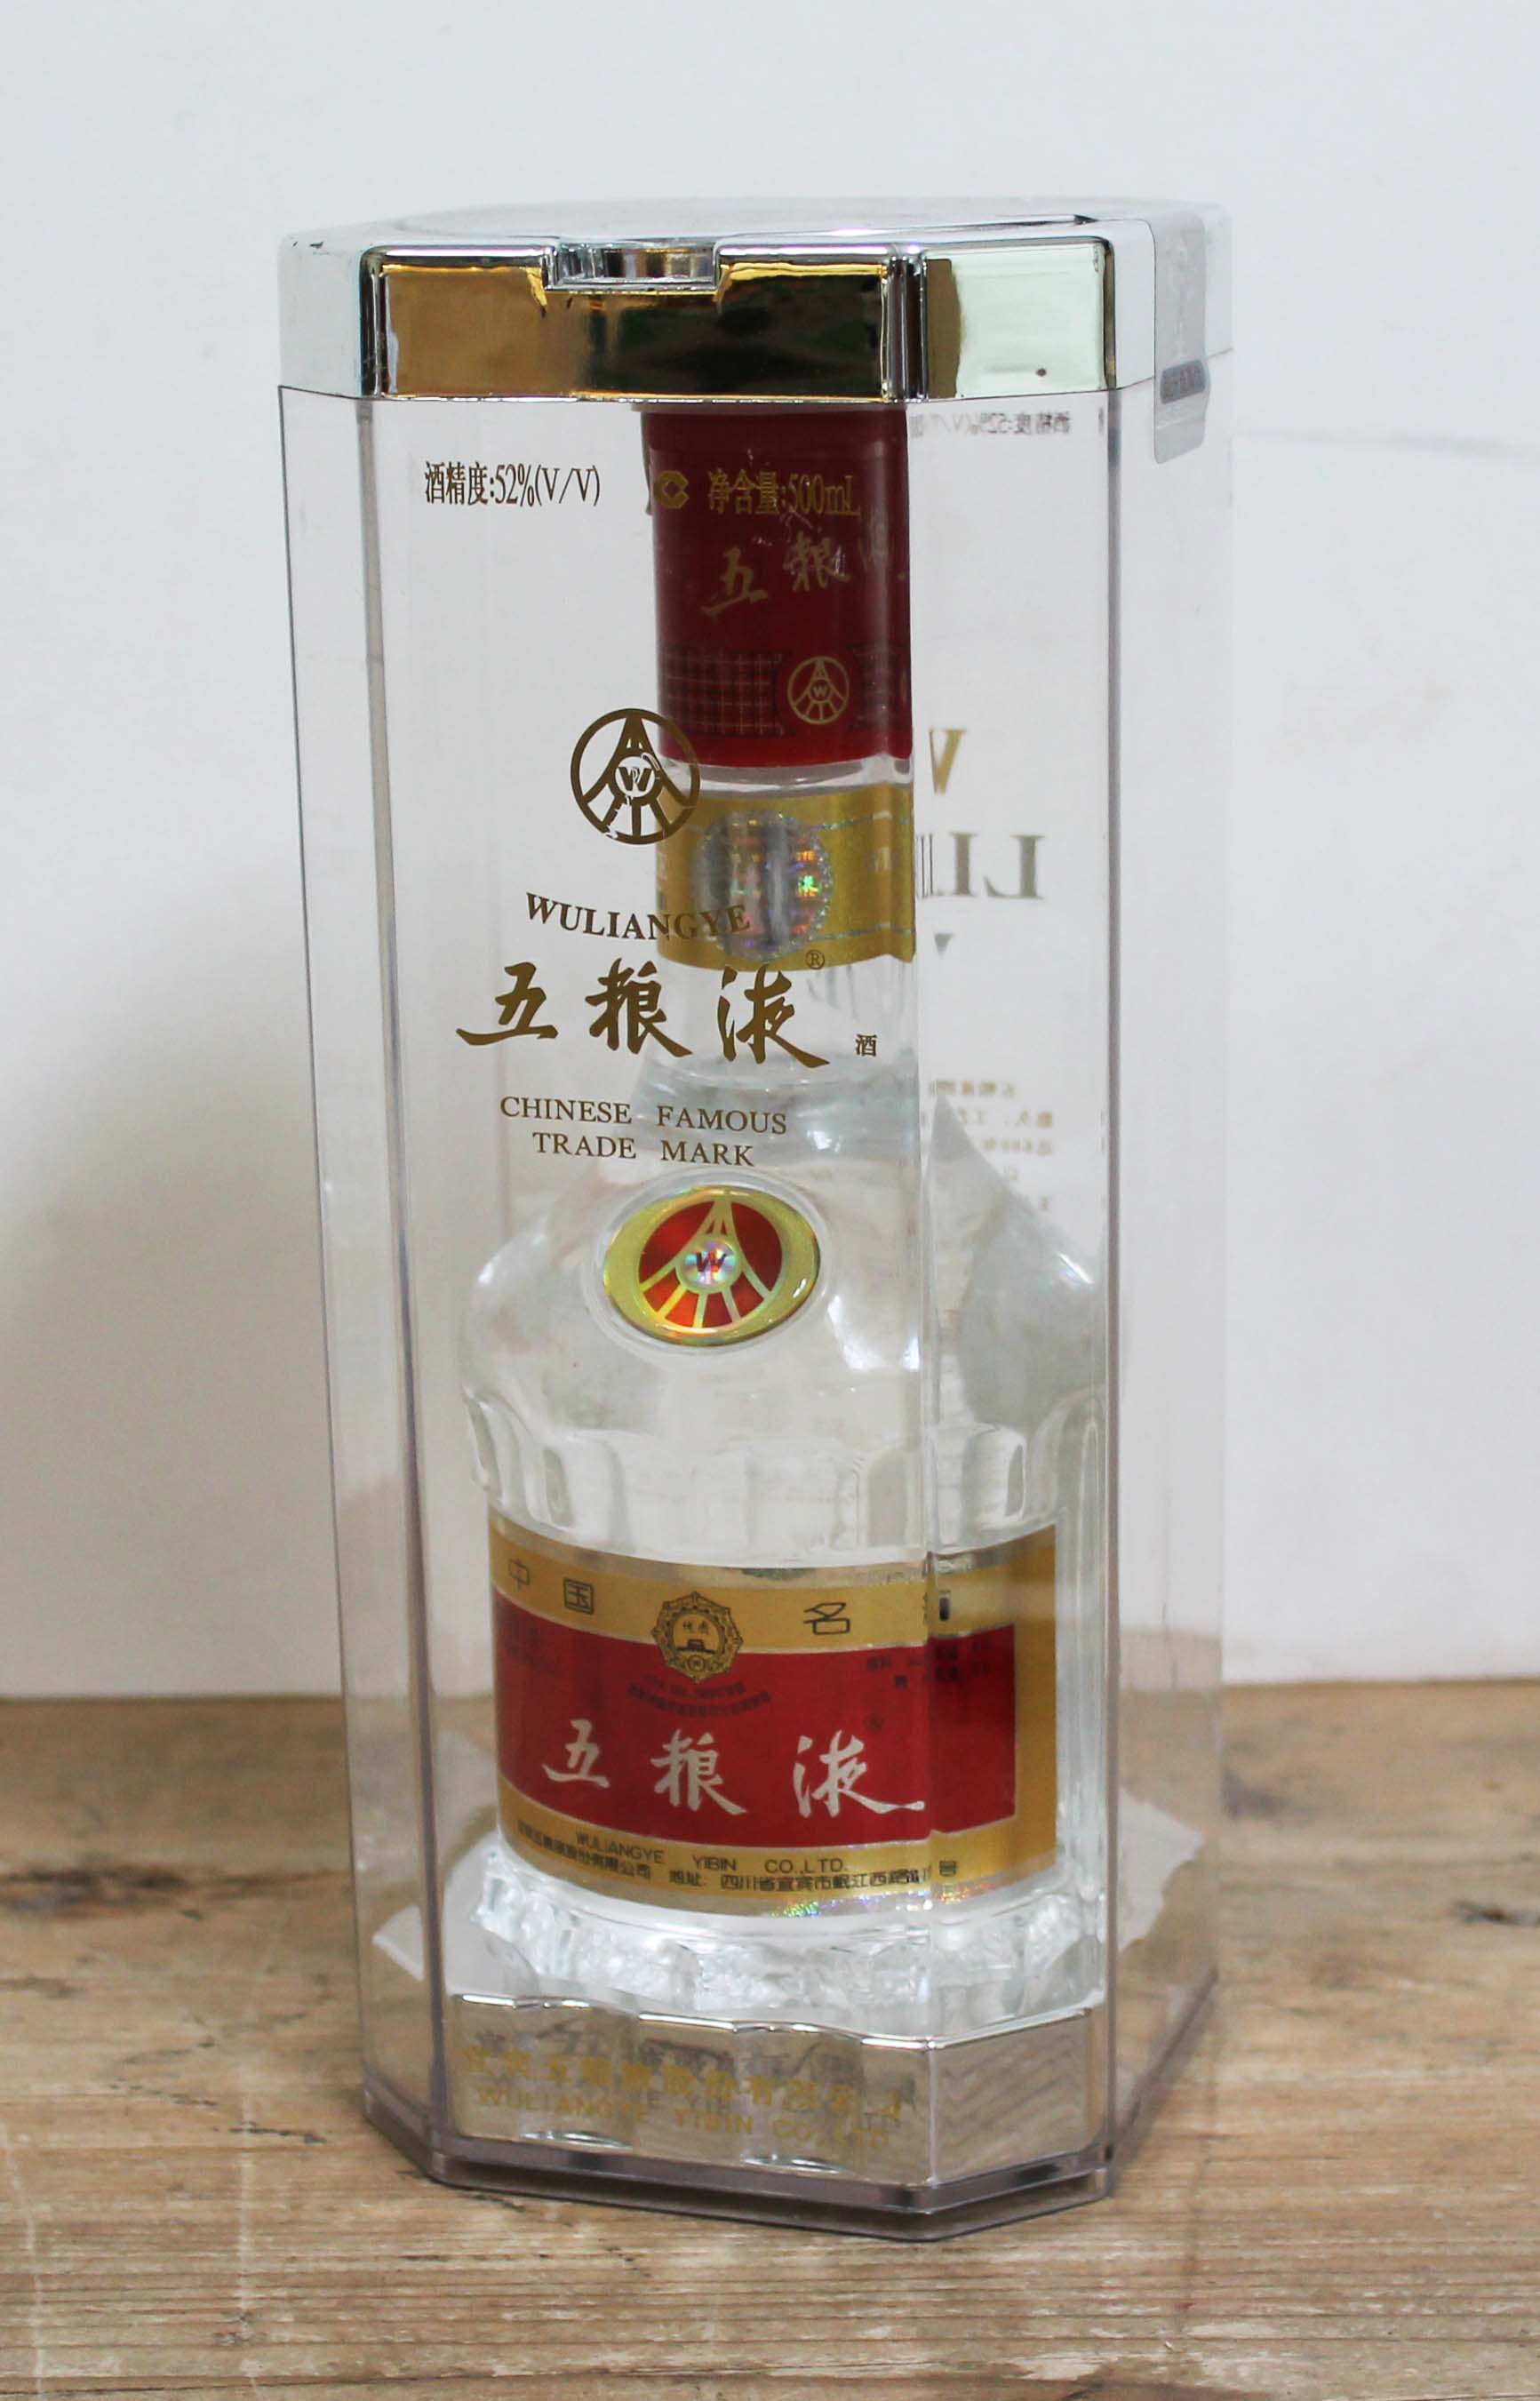 A bottle of Wuliangye Baijiu licquor, 52% 500ml.